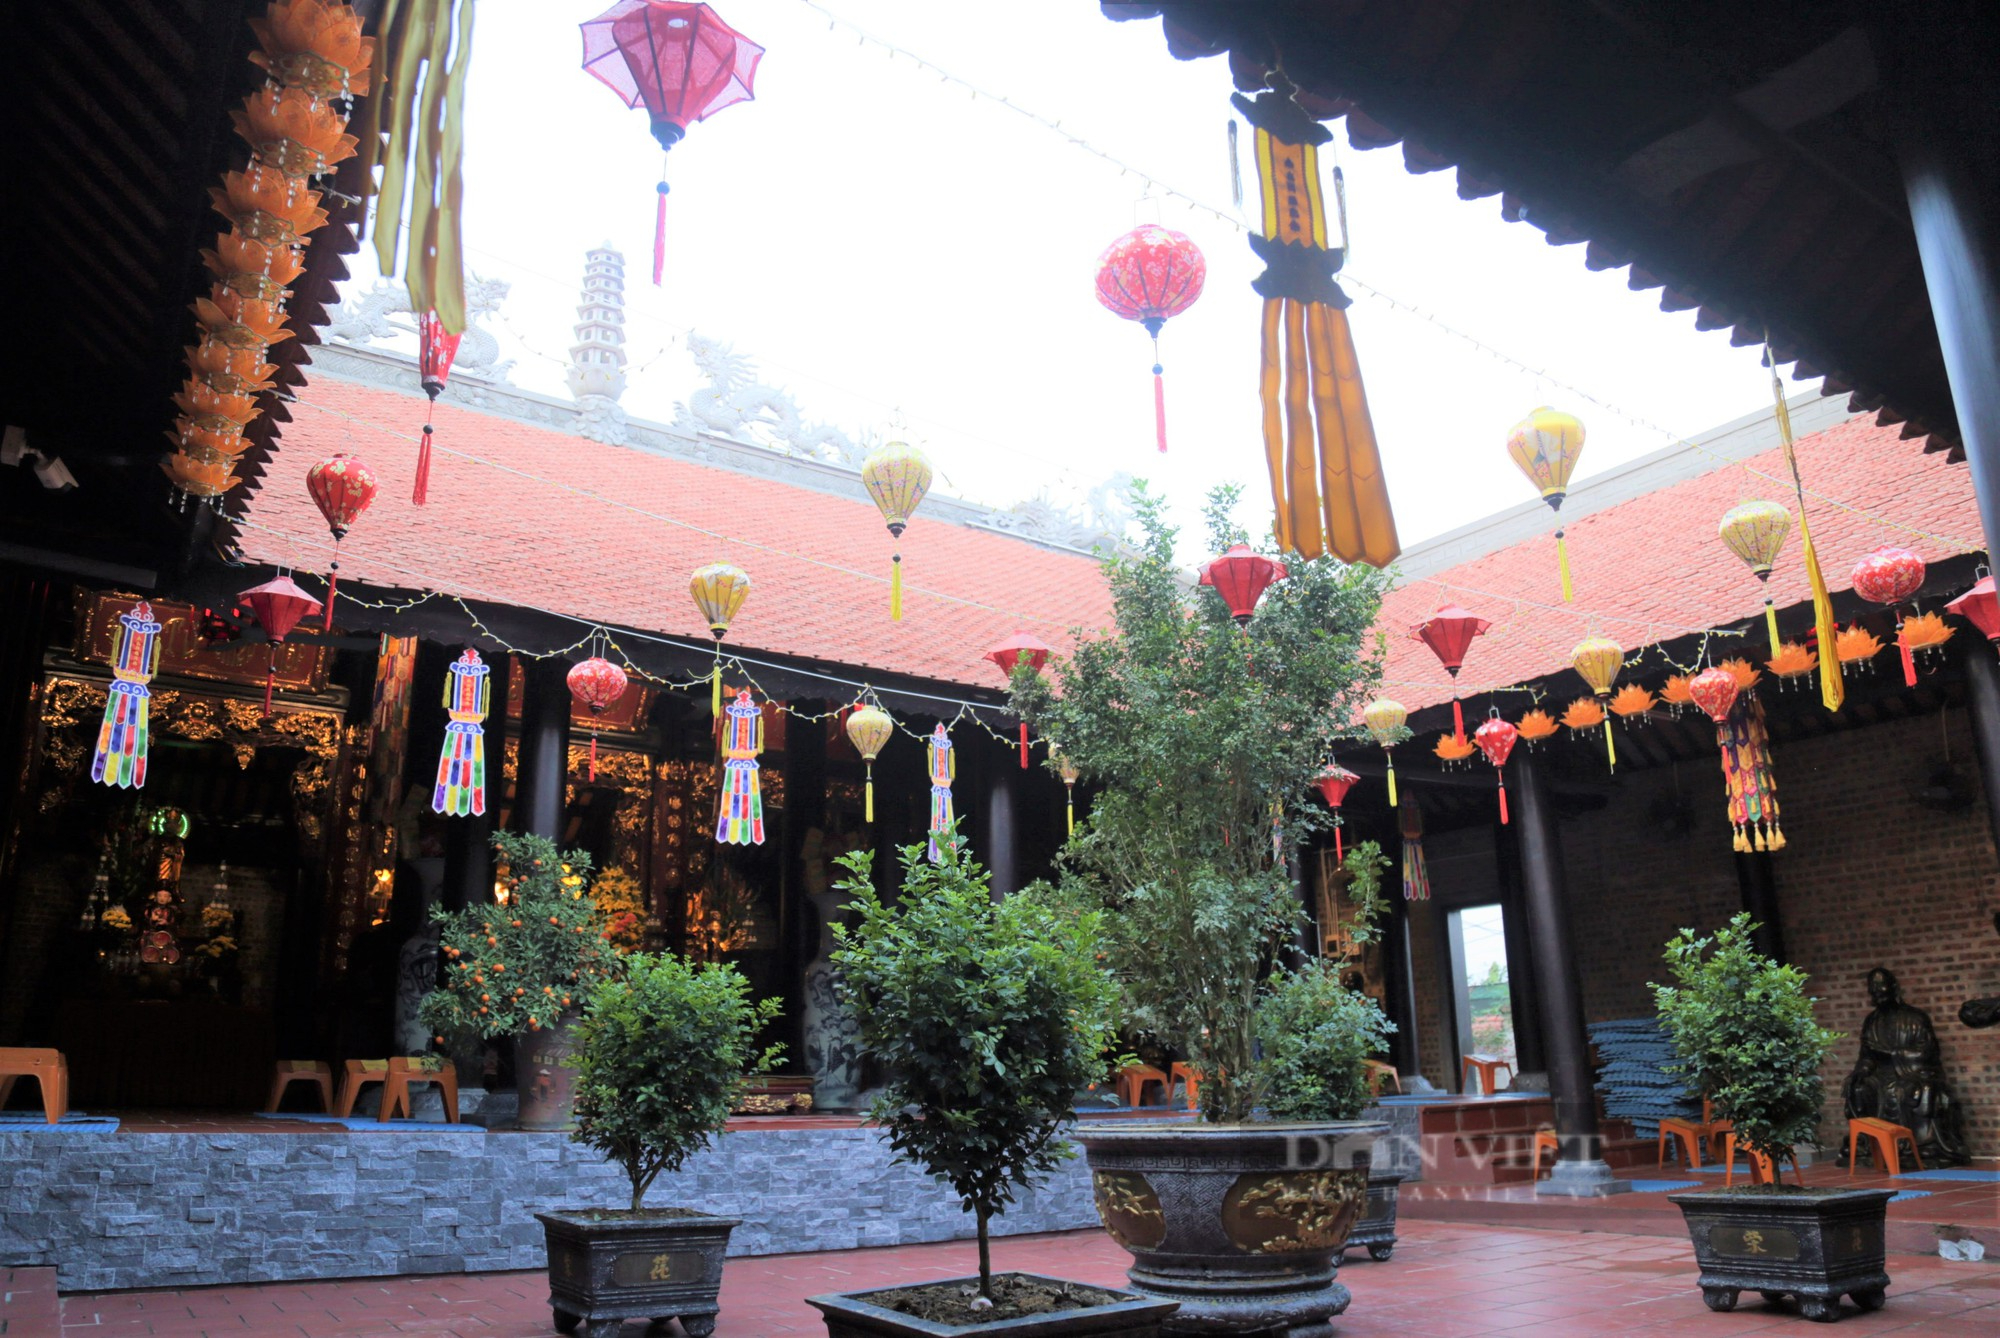 Đền chùa Gám khắc đậm sự phát triển bền vững văn hoá, tâm linh Việt Nam trong mỗi người dân huyện lúa anh hùng - Ảnh 5.